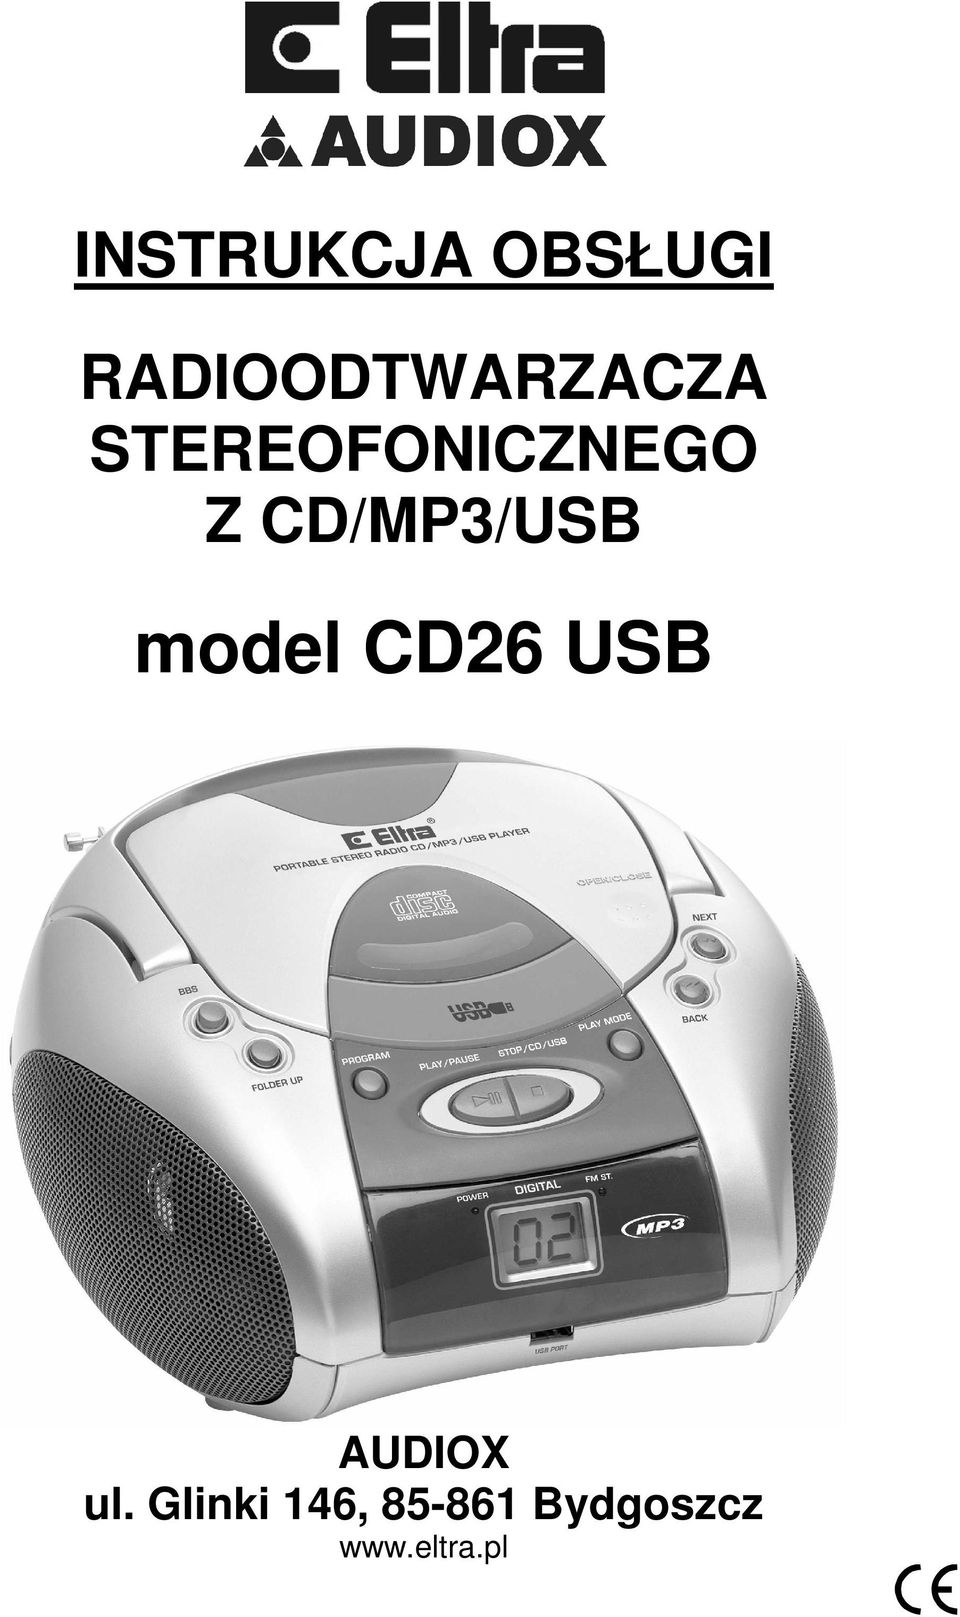 Z CD/MP3/USB model CD26 USB